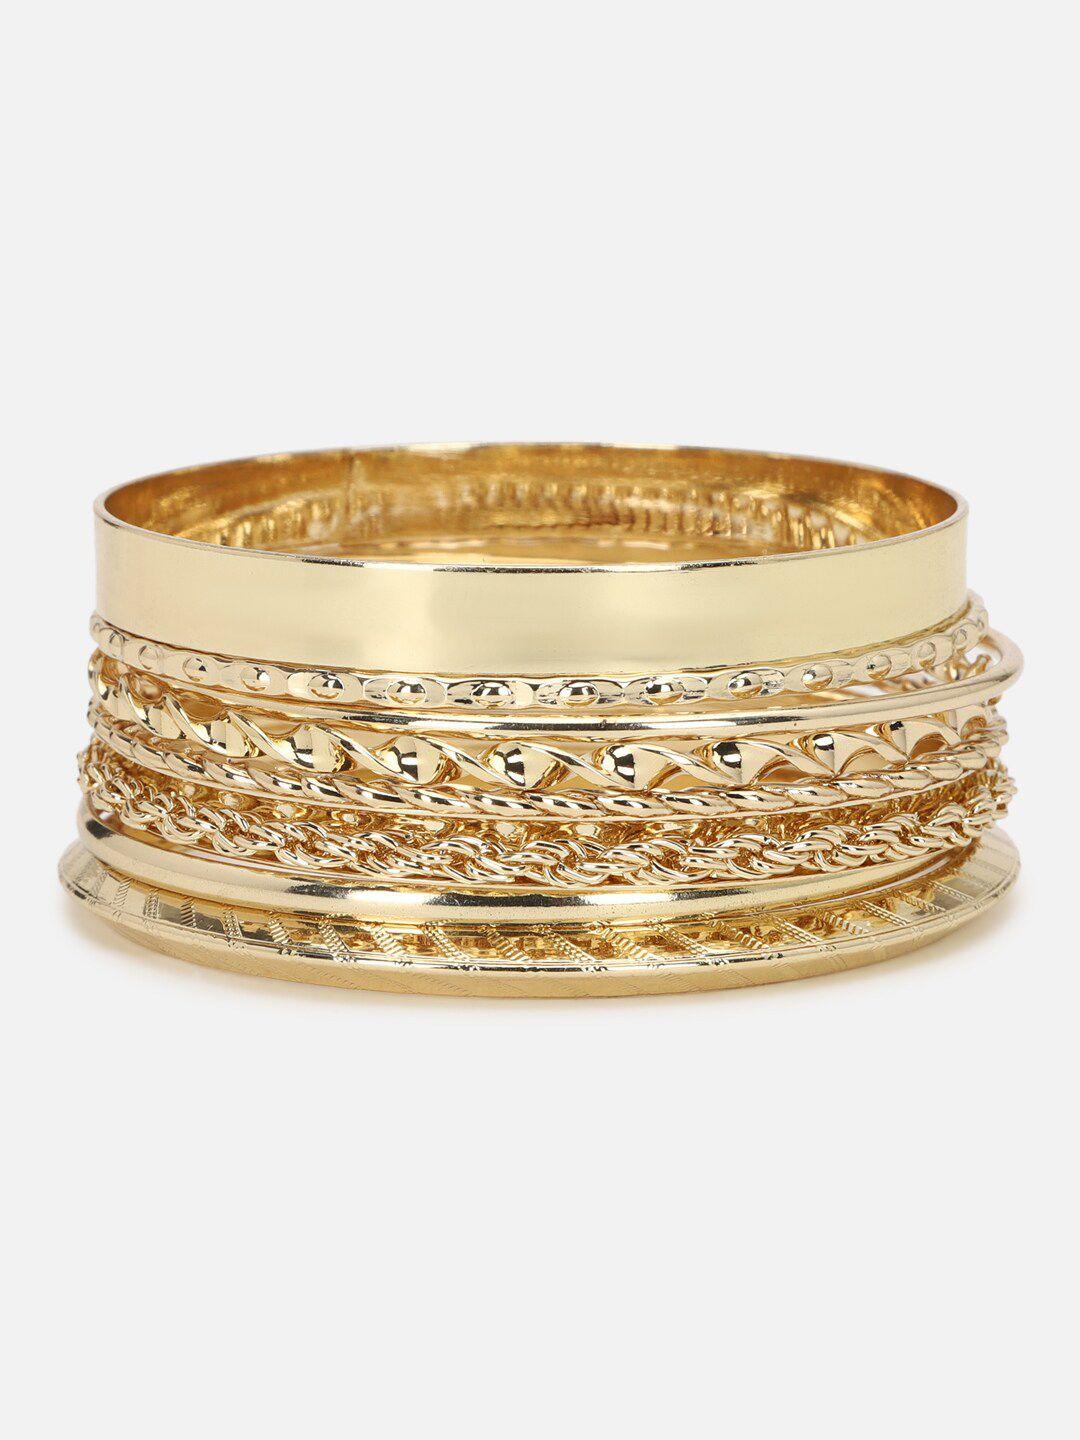 forever-21-women-8-gold-toned-kada-bracelet